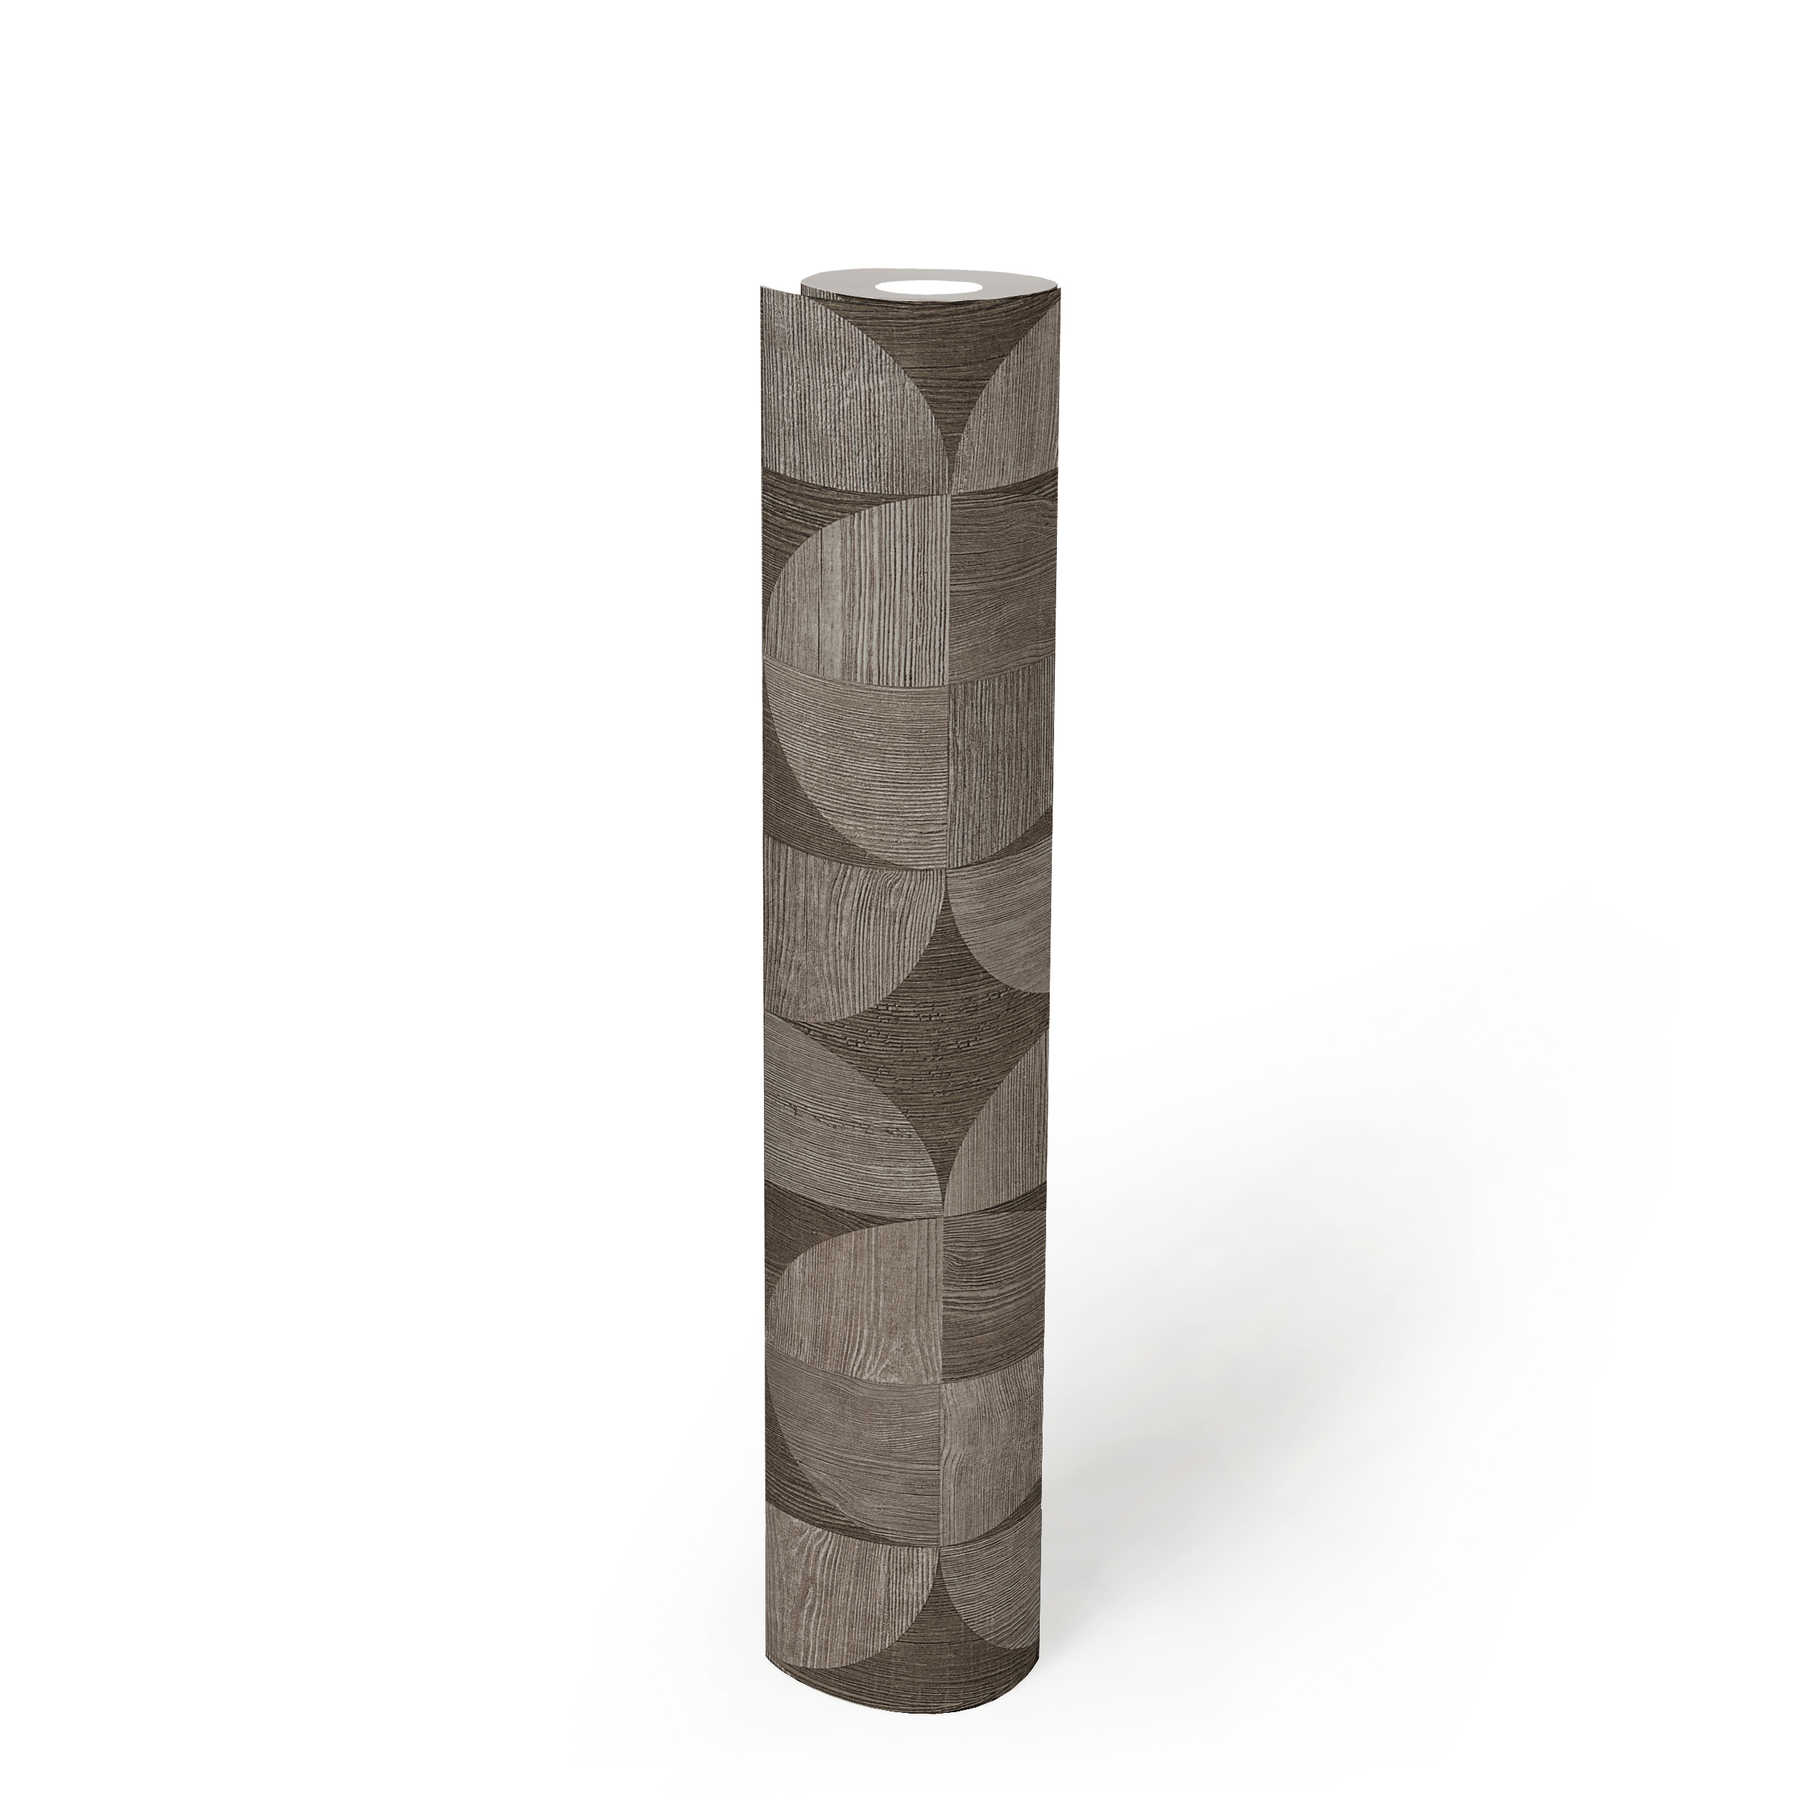             Tapete mit grafischem Muster in Holzoptik – Grau, Braun
        